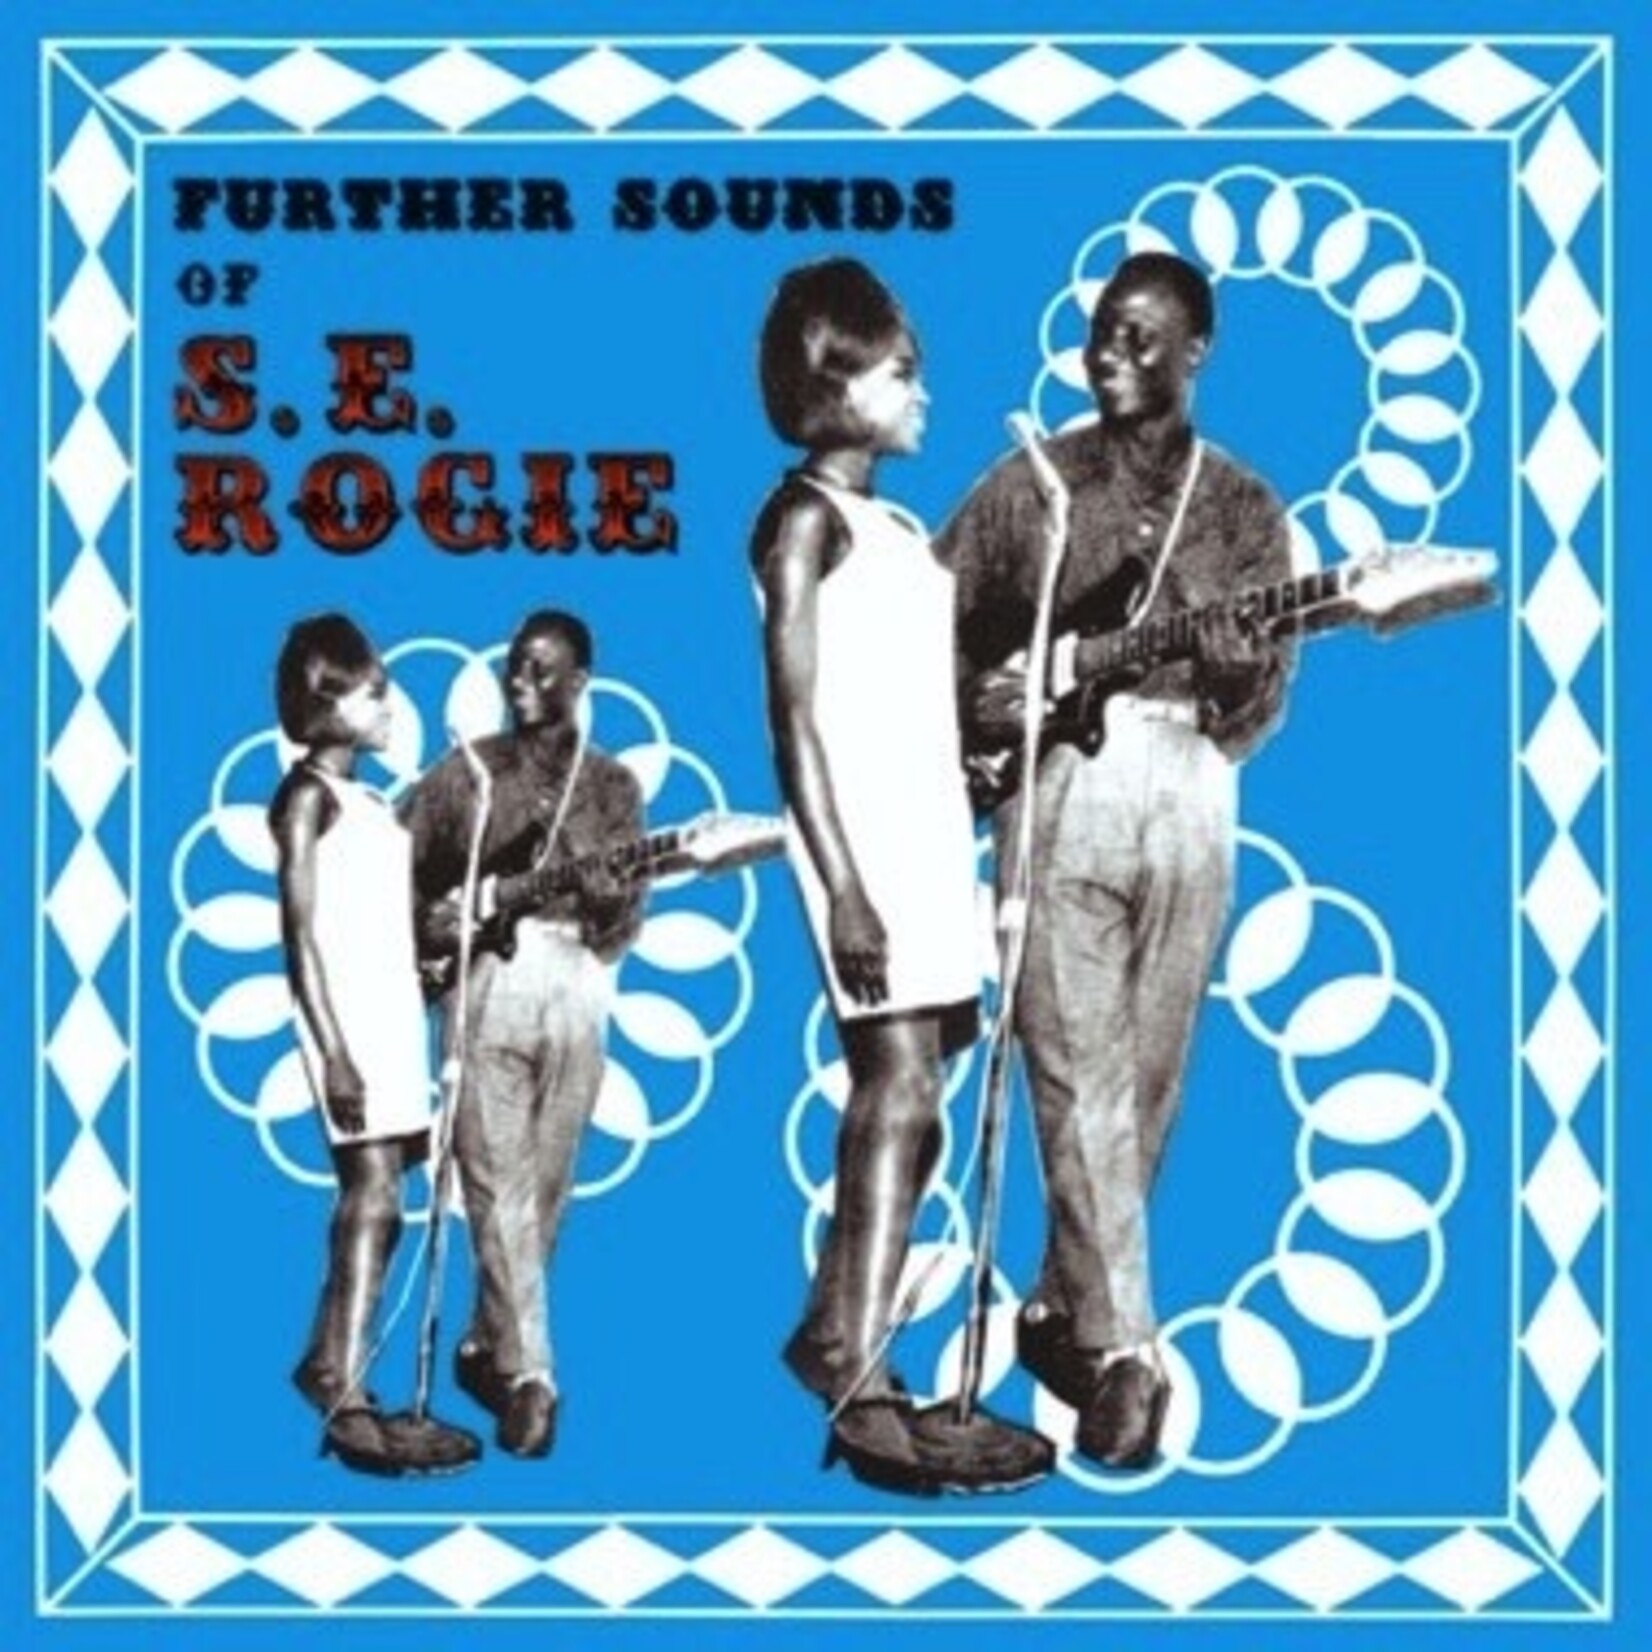 Mississippi SE Rogie - The Further Sounds of SE Rogie (LP)